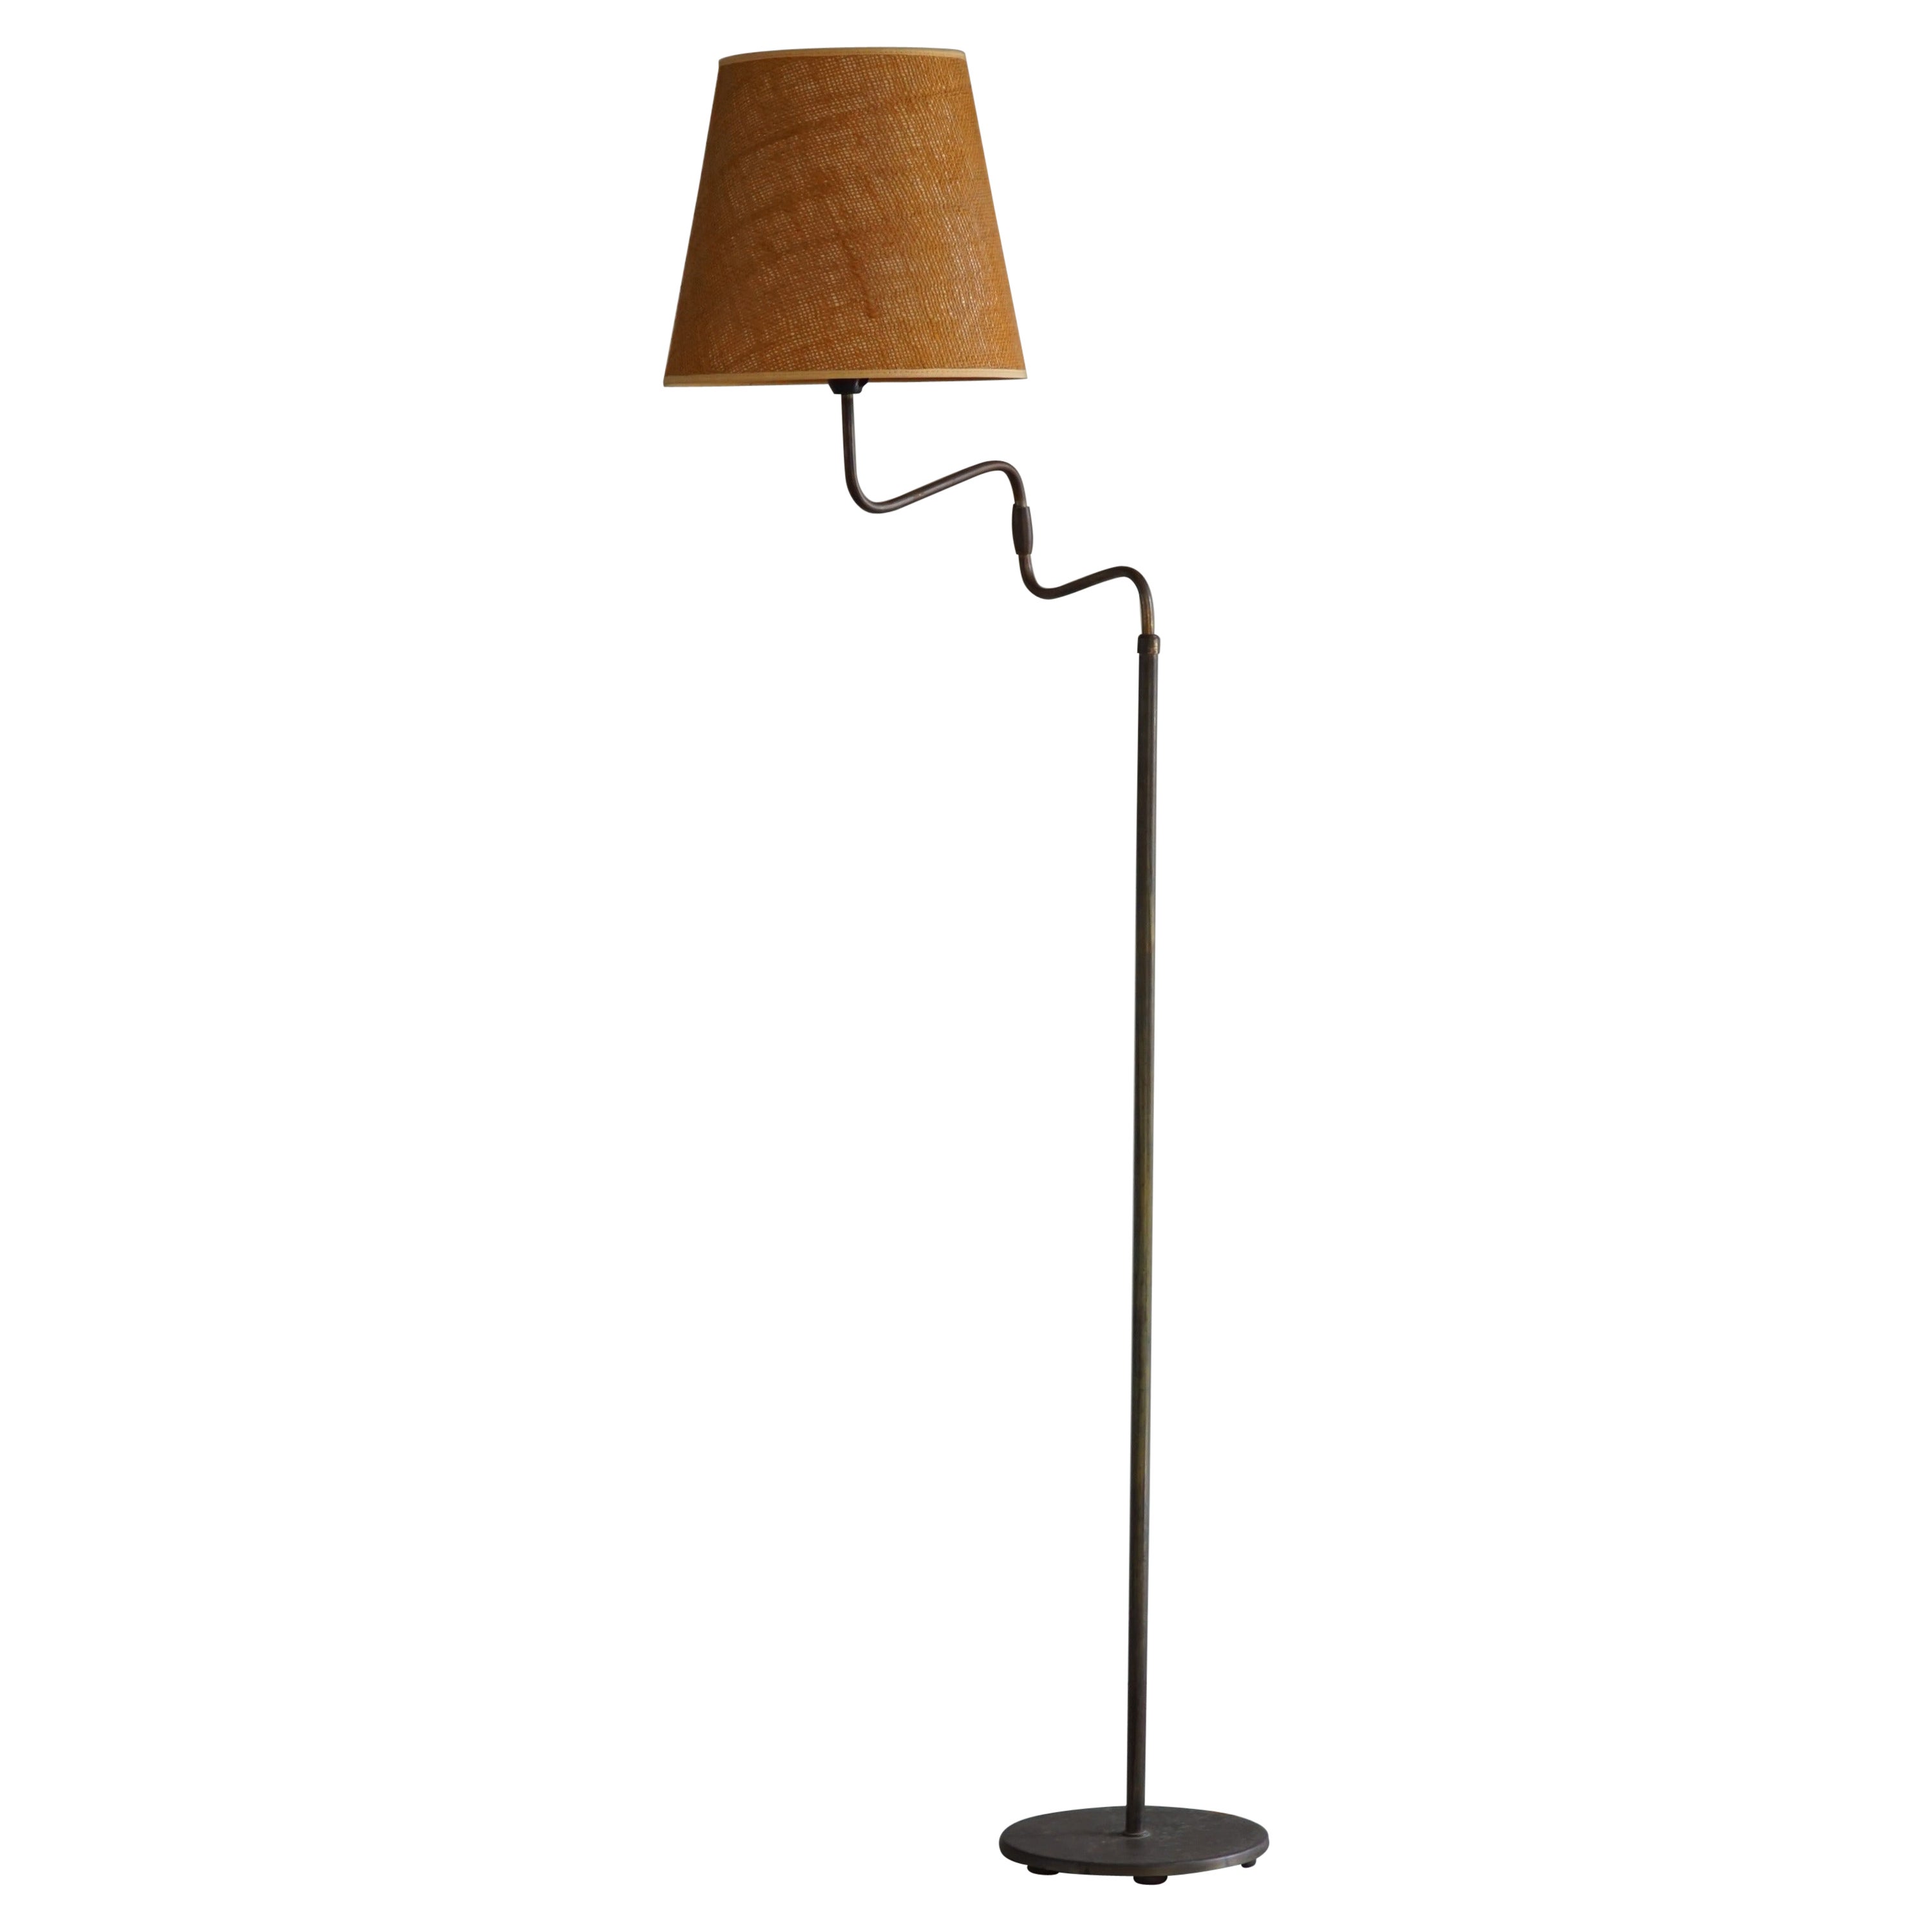 Danish Modern, Adjustable Swing Arm Floor Lamp in Brass, Midcentury, 1950s